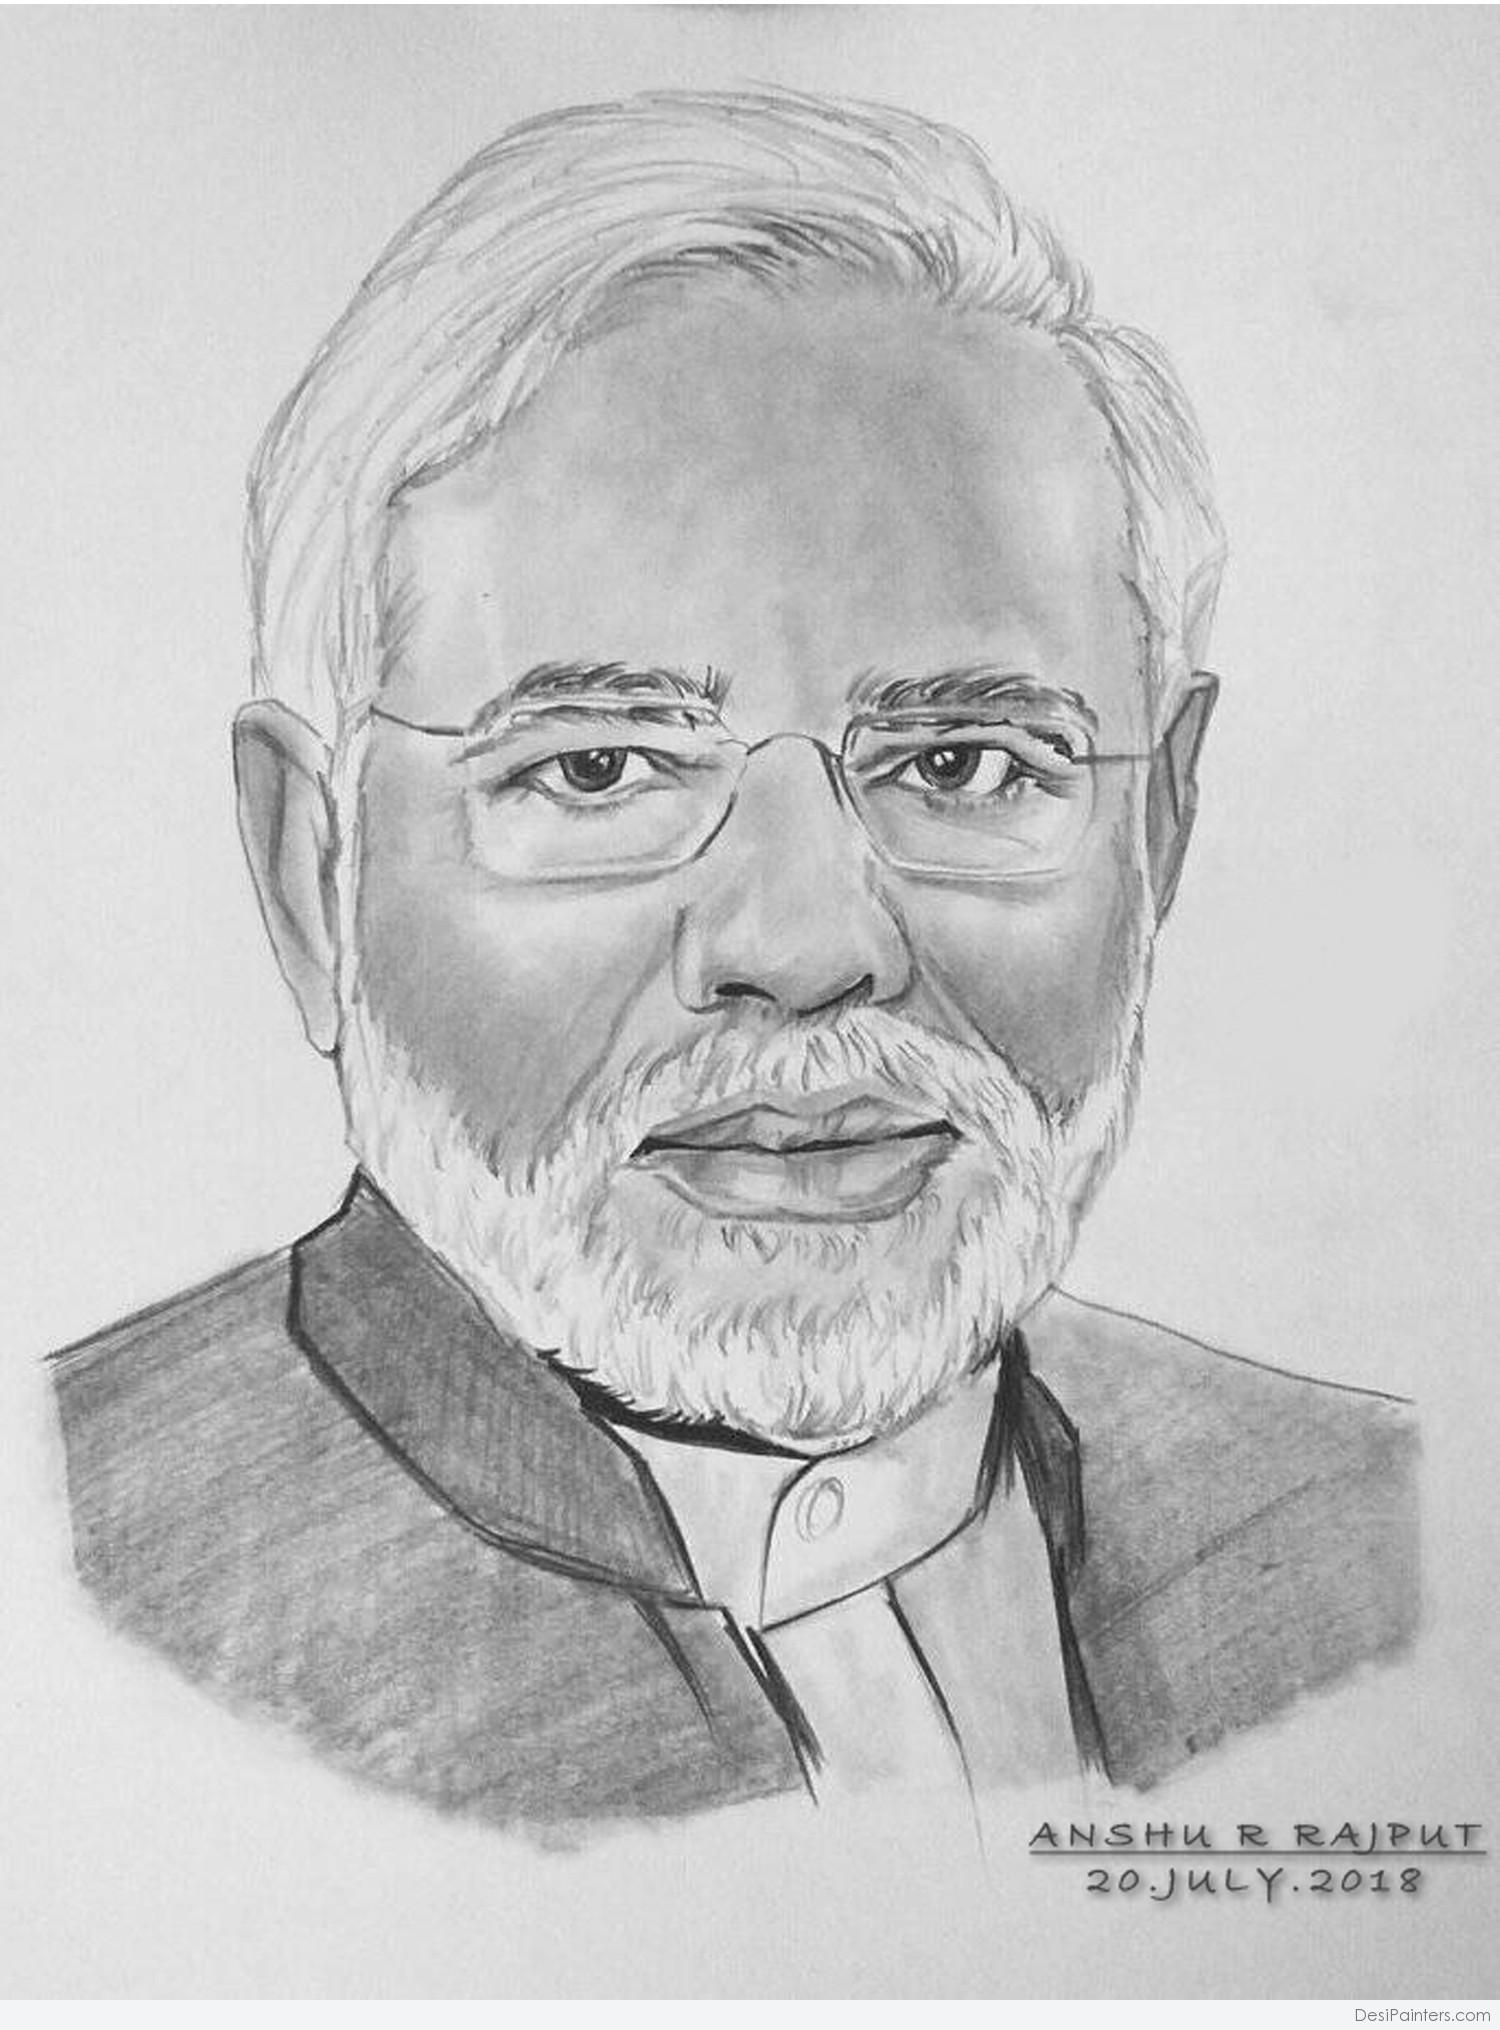 Great Pencil Sketch Of Prime Minister Narendra Modi